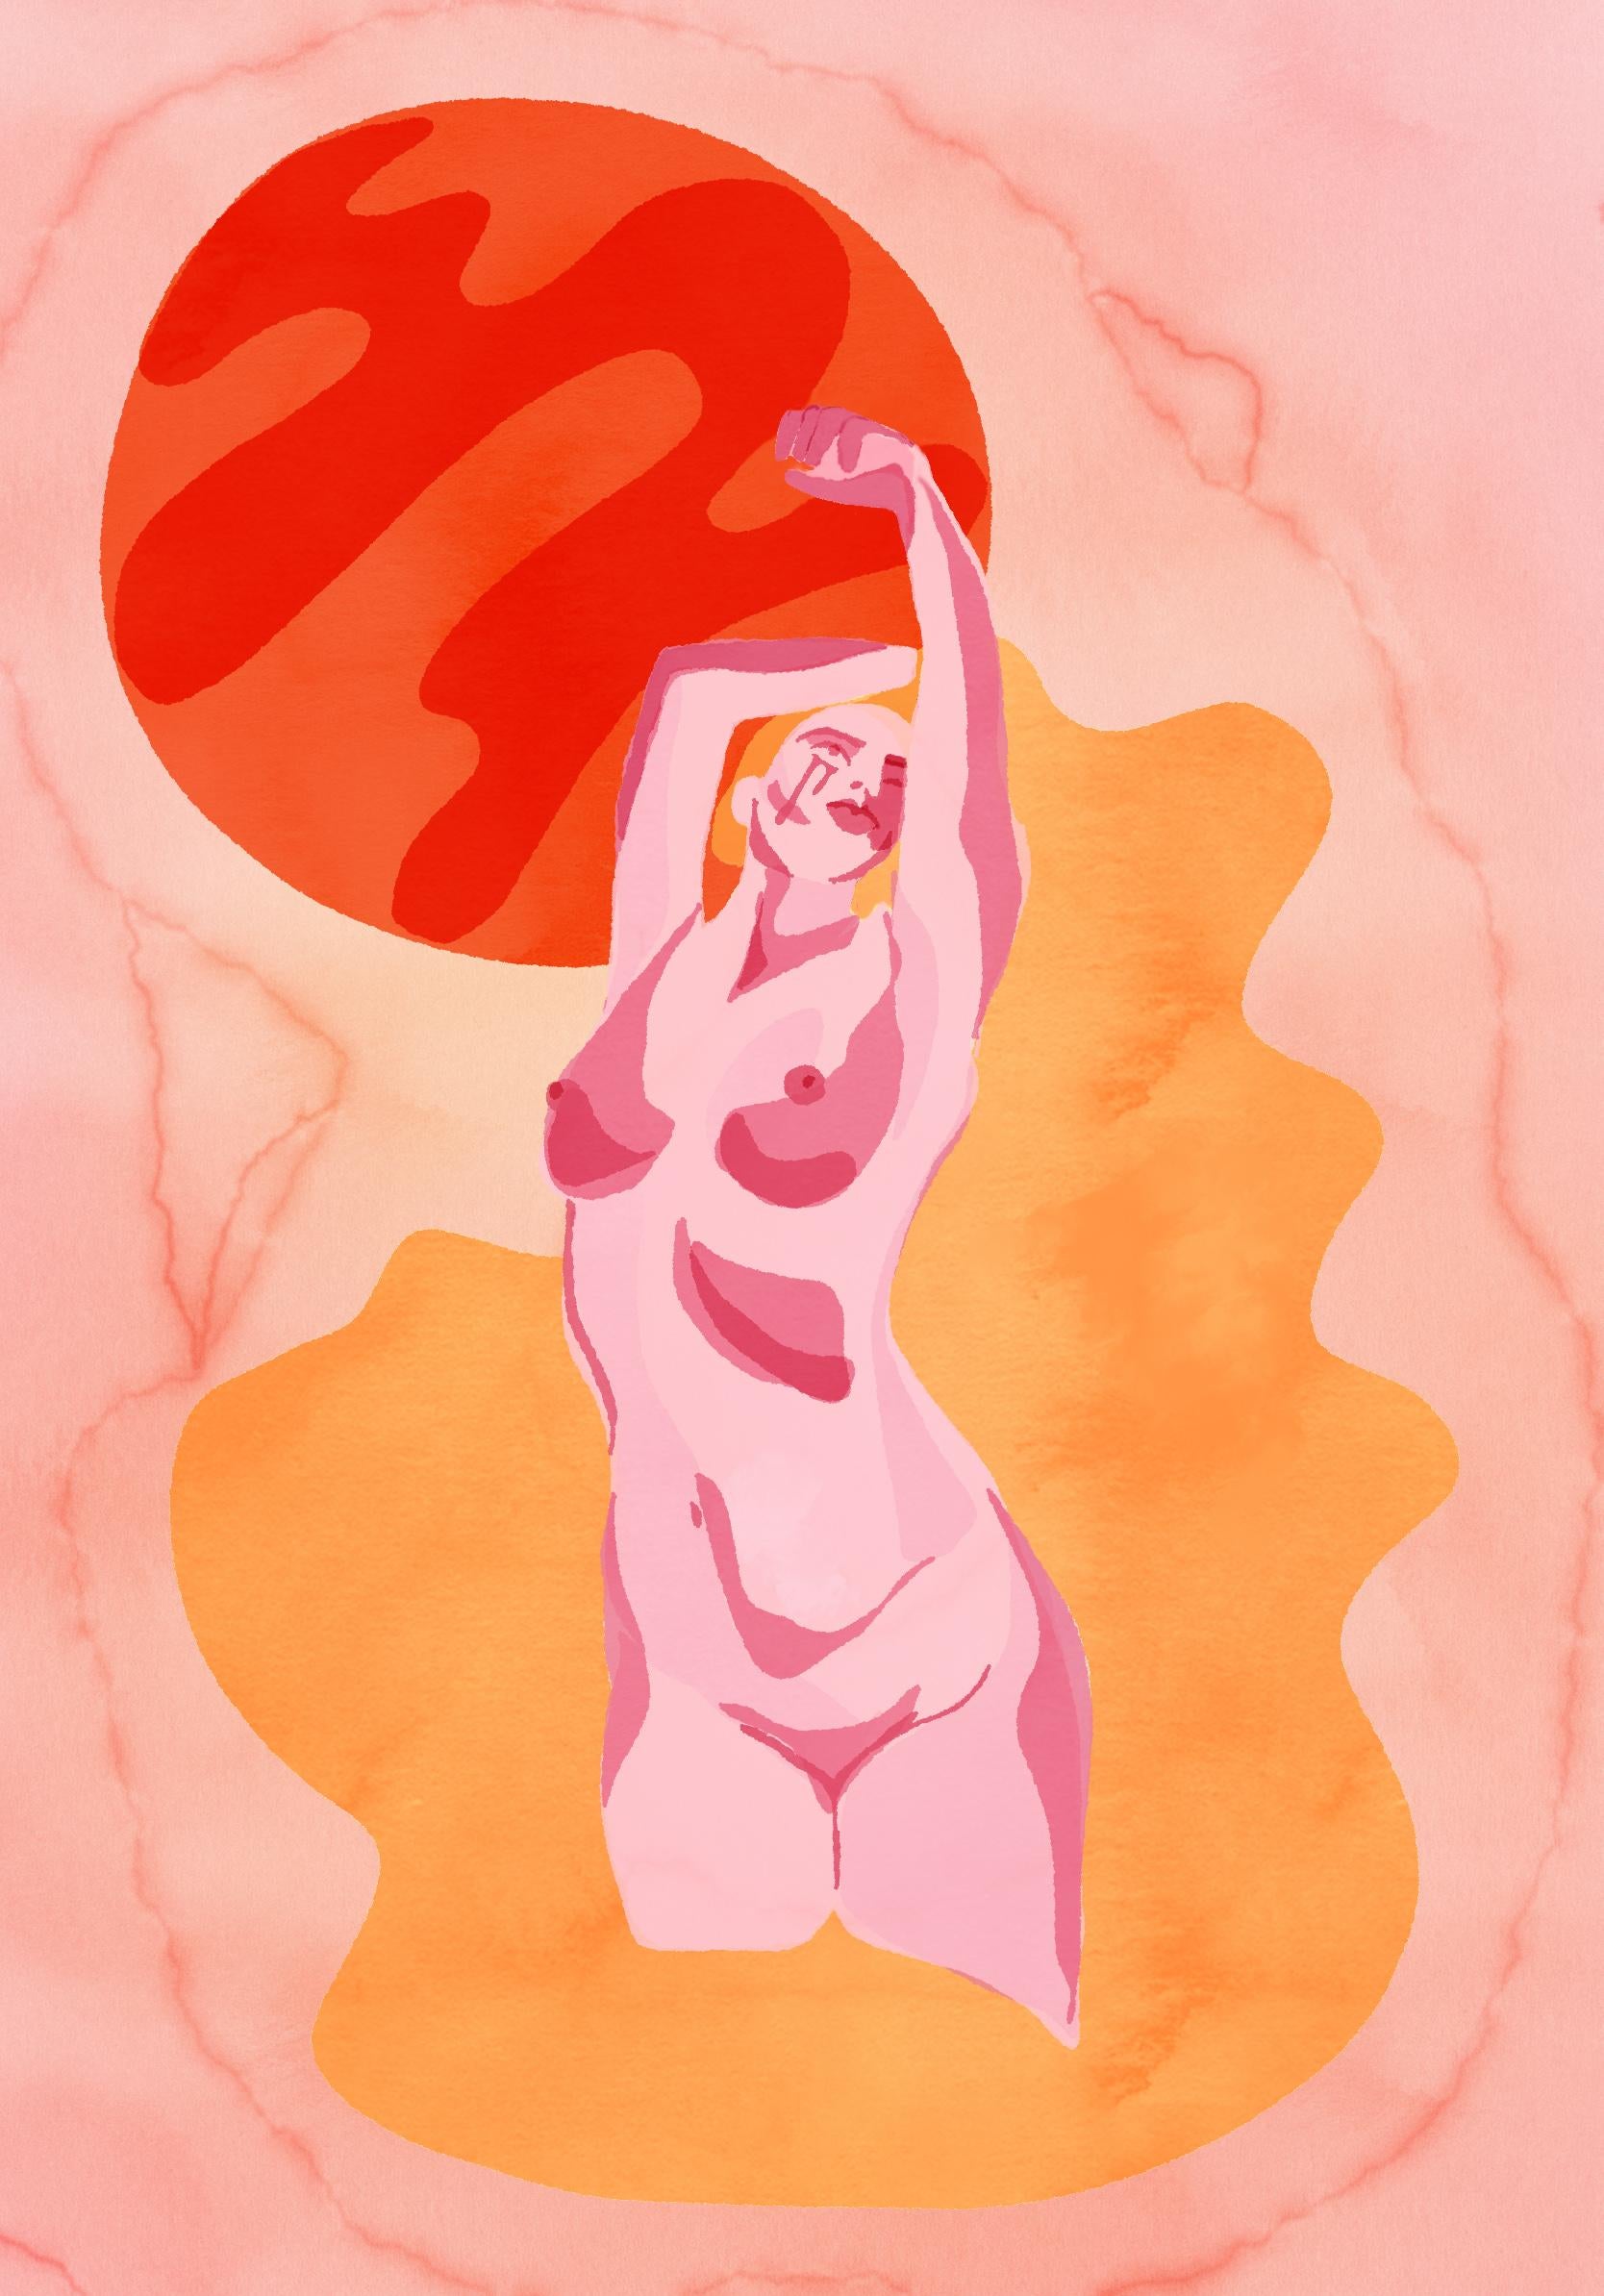 Les larmes de Mars, Impression figurative numérique sur papier, portrait de femme nue